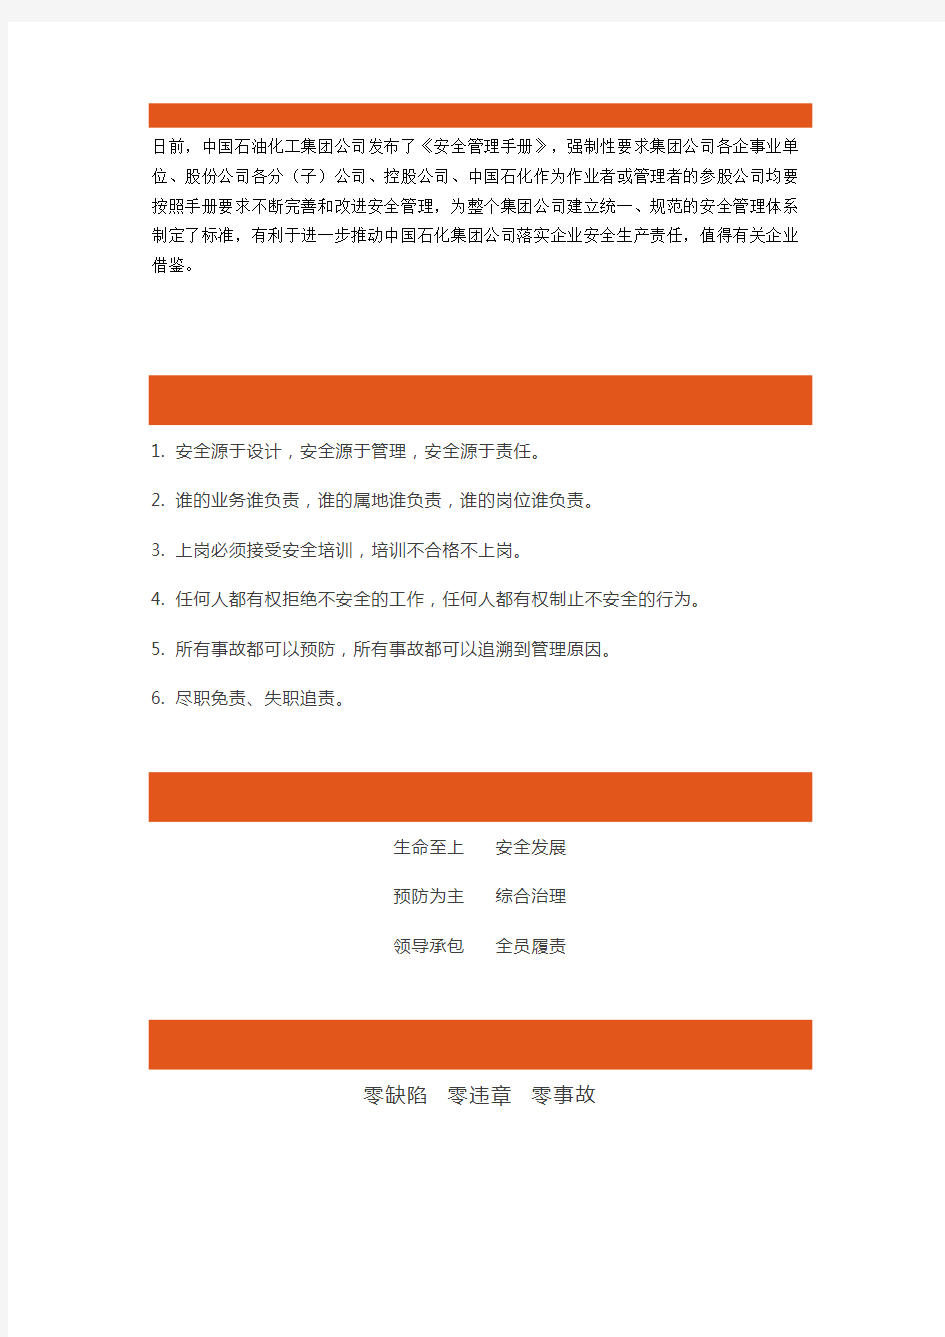 中国石油化工集团安全纲领性文件